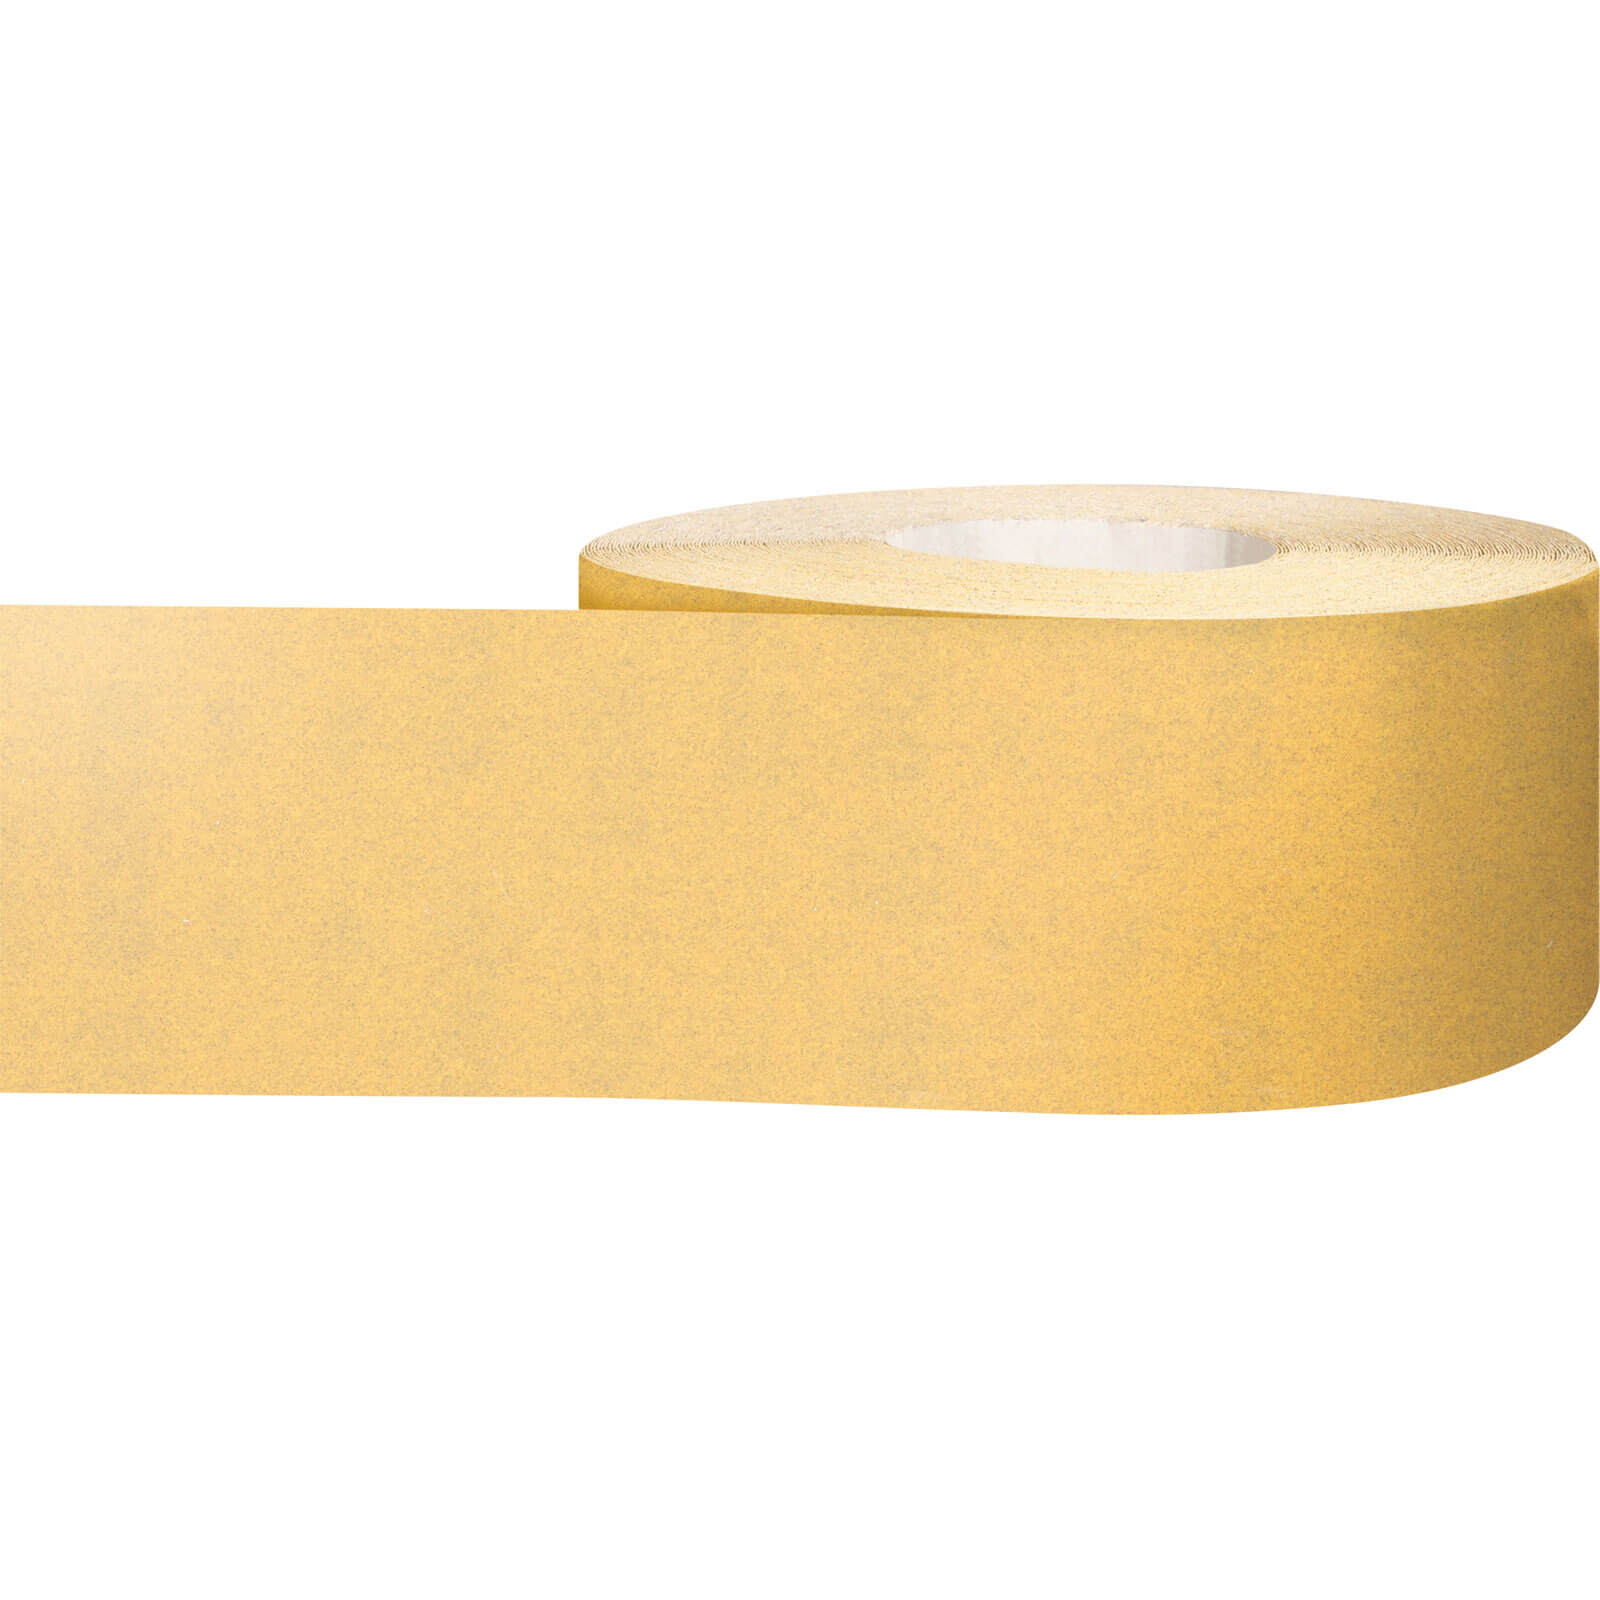 Photos - Abrasive Wheel / Belt Bosch Expert C470 Best for Wood and Paint Sanding Roll 115mm 50m 180g 2608 